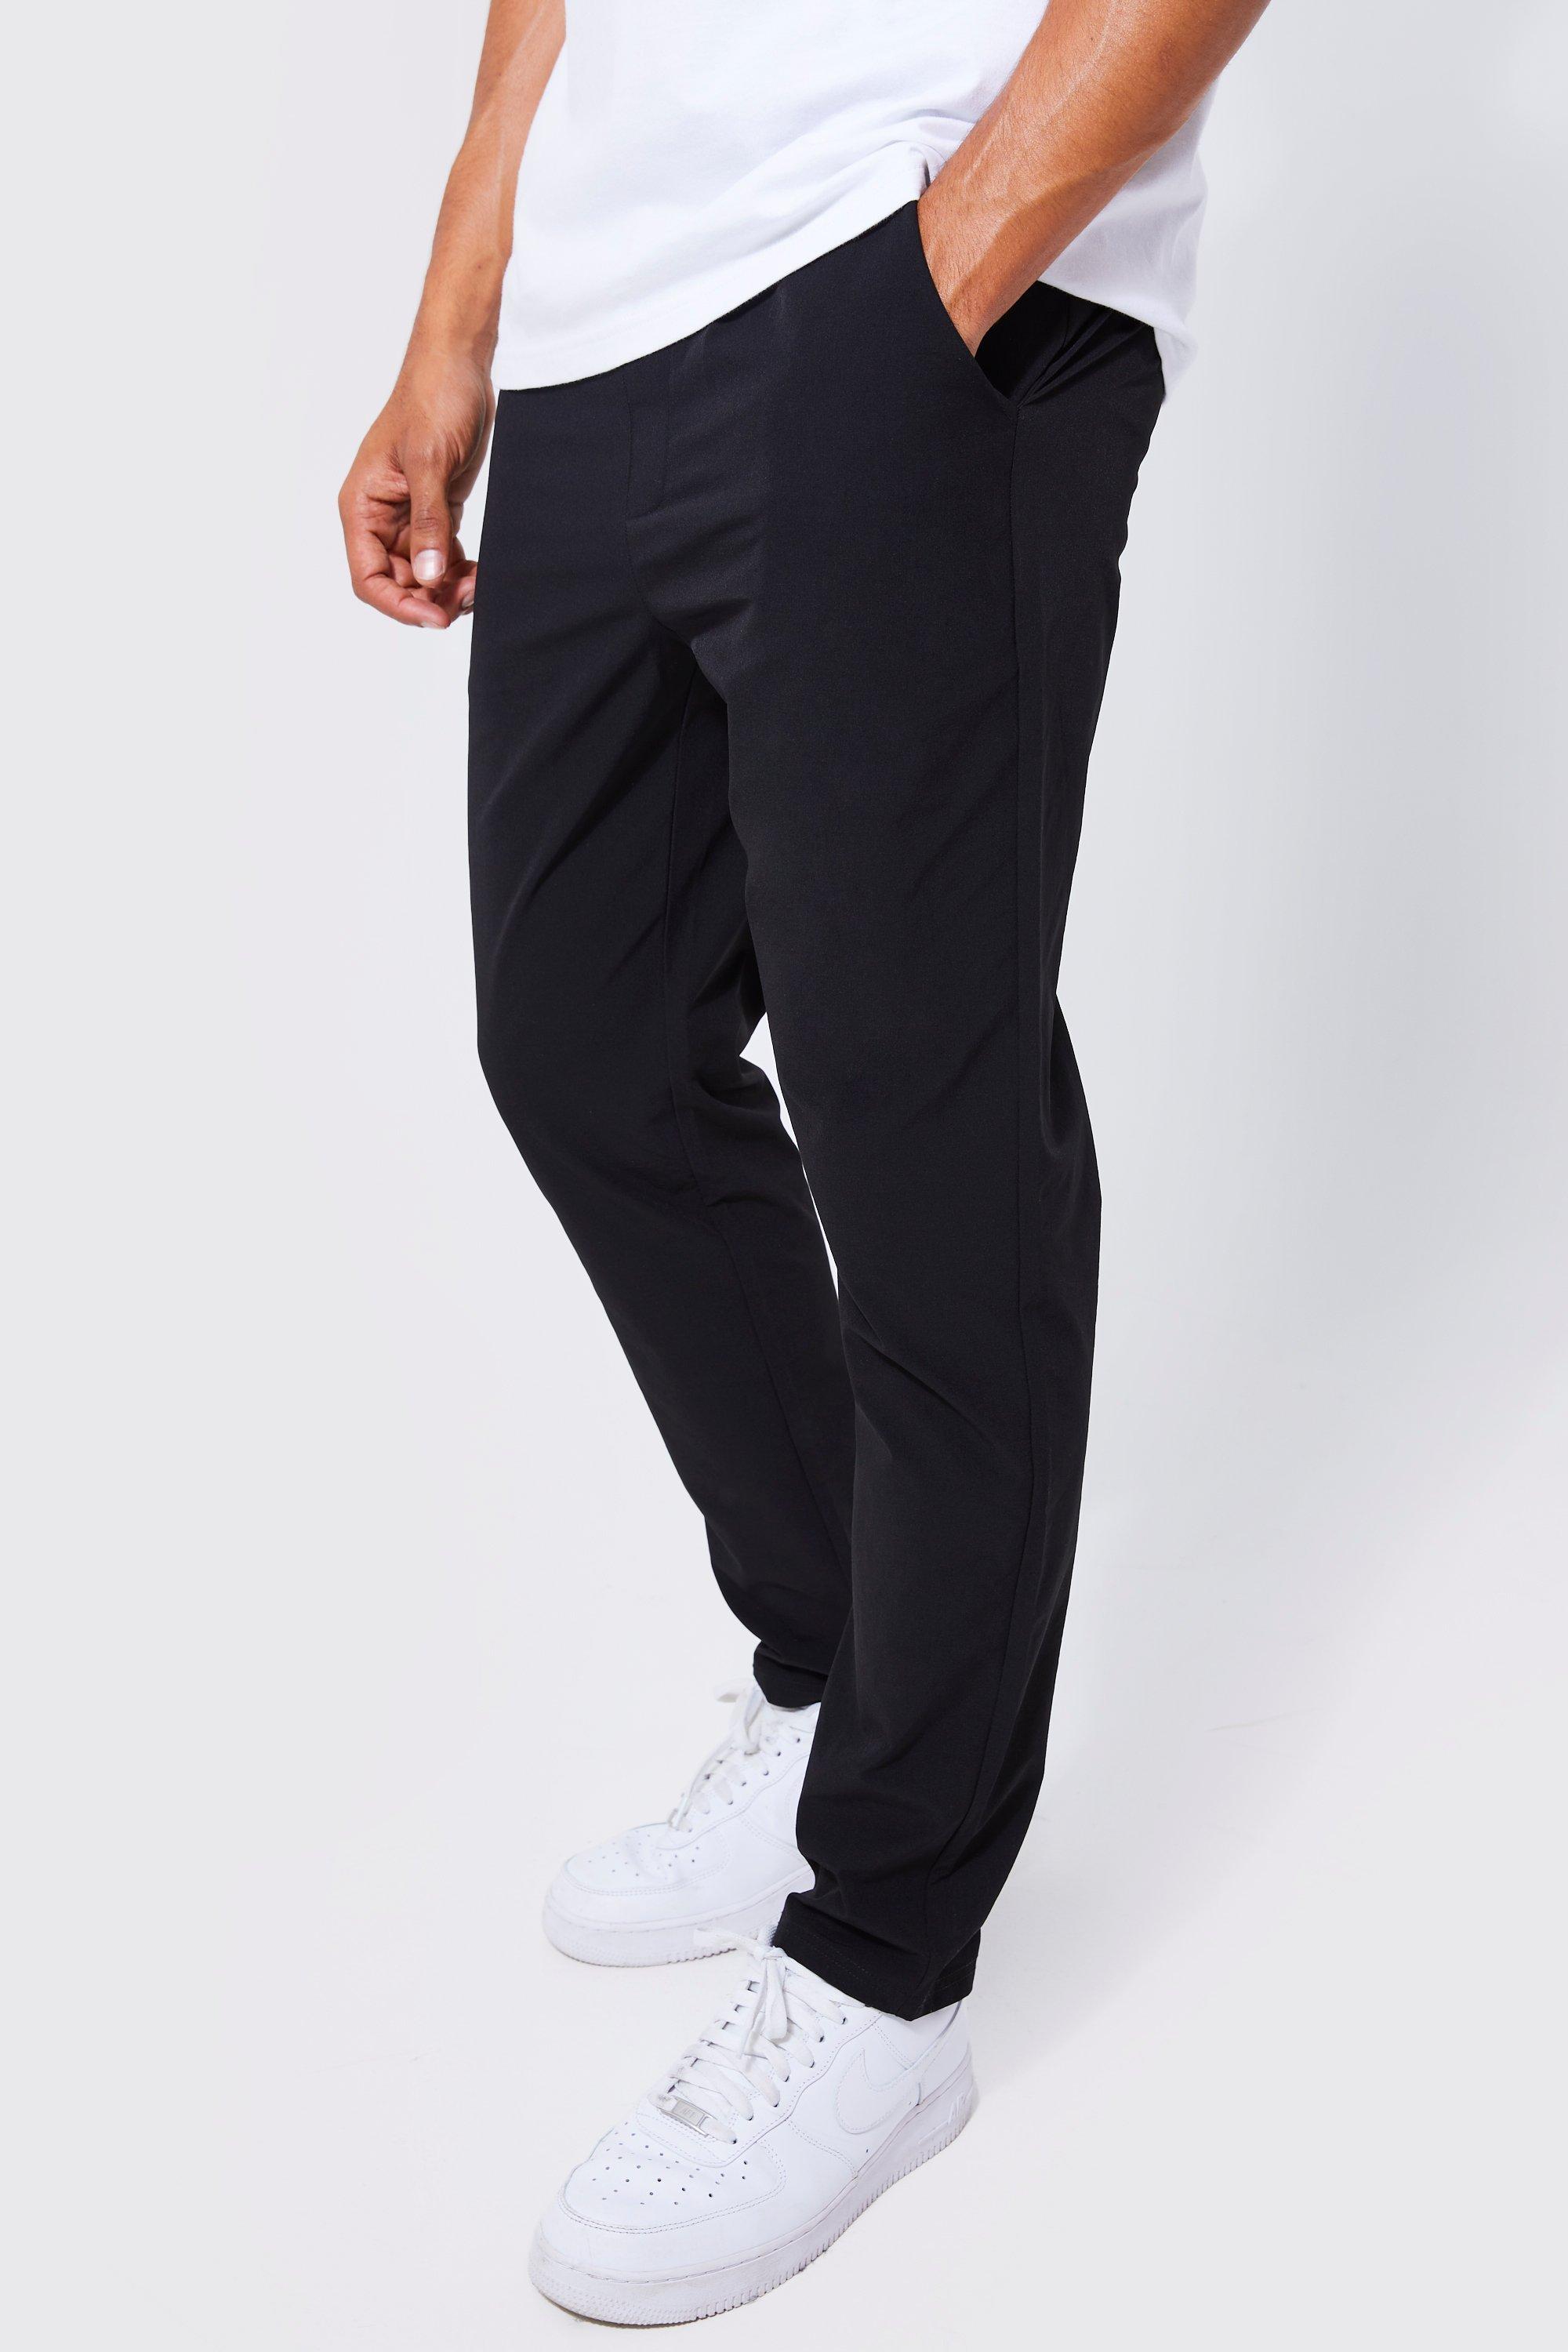 Image of Pantaloni Slim Fit in Stretch tecnico leggero con vita elasticizzata, Nero